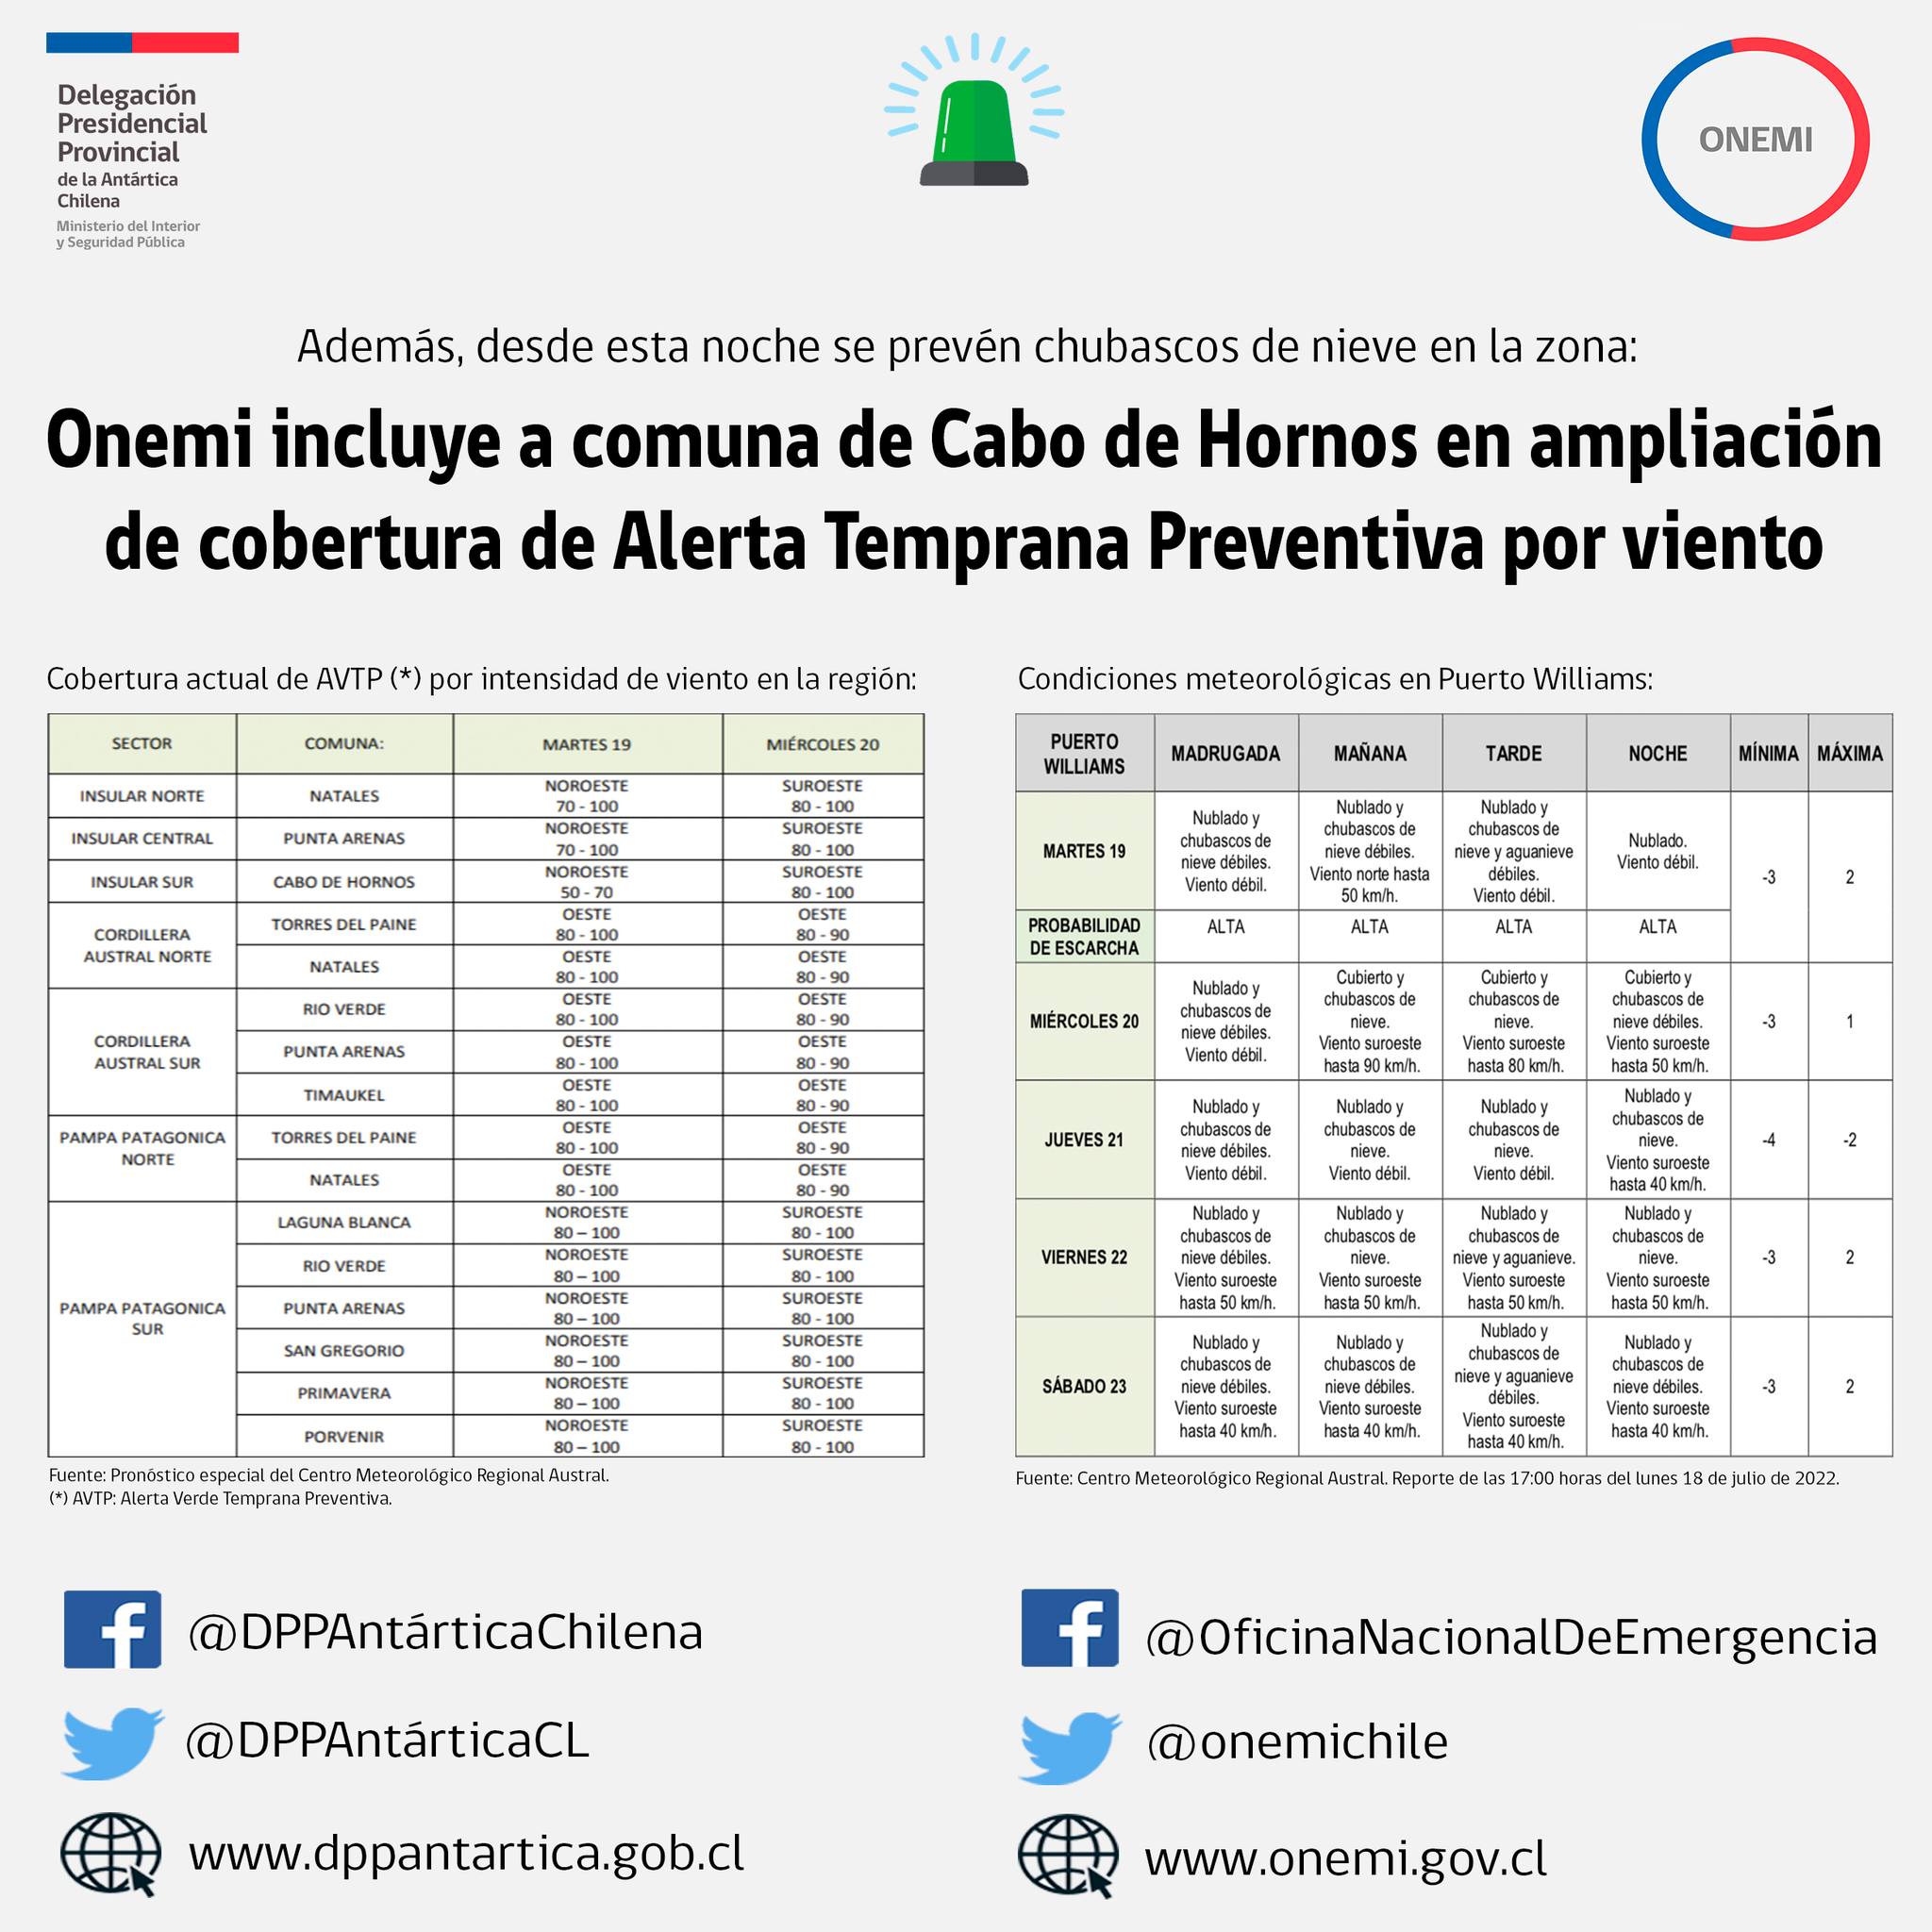 [AFICHE] Onemi incluyó a comuna de Cabo de Hornos en actualización y ampliación de cobertura de Alerta Verde Temprana Preventiva por viento en la región